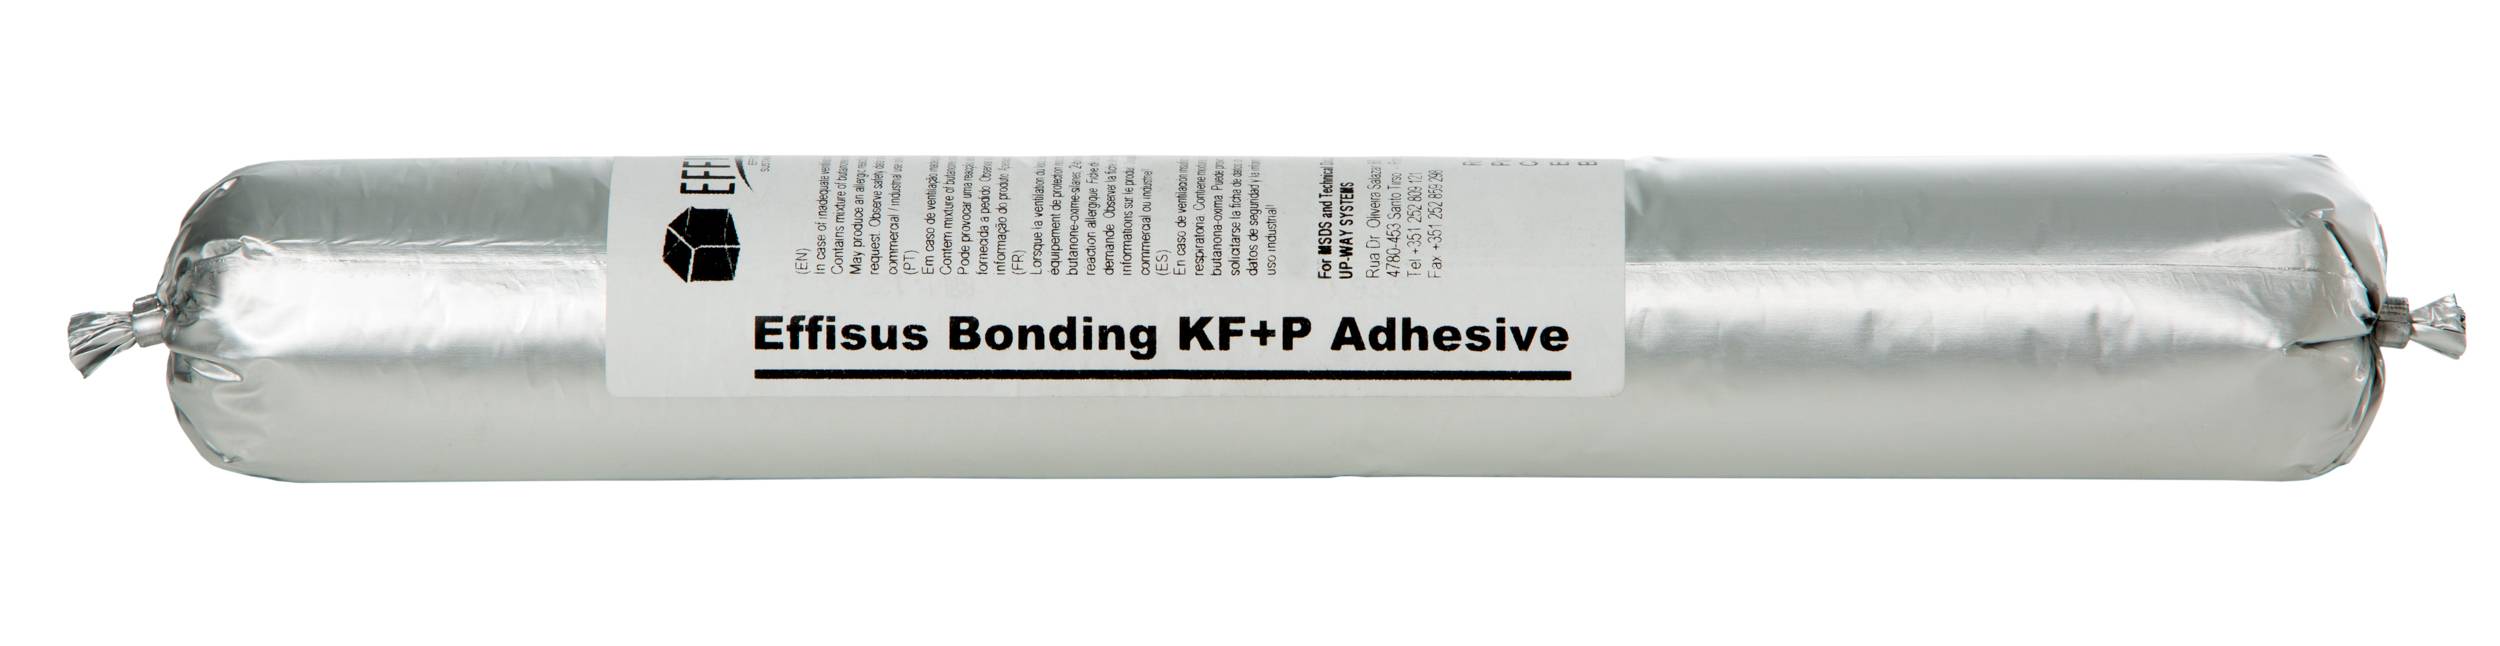 Effisus Bonding KF+P Adhesive